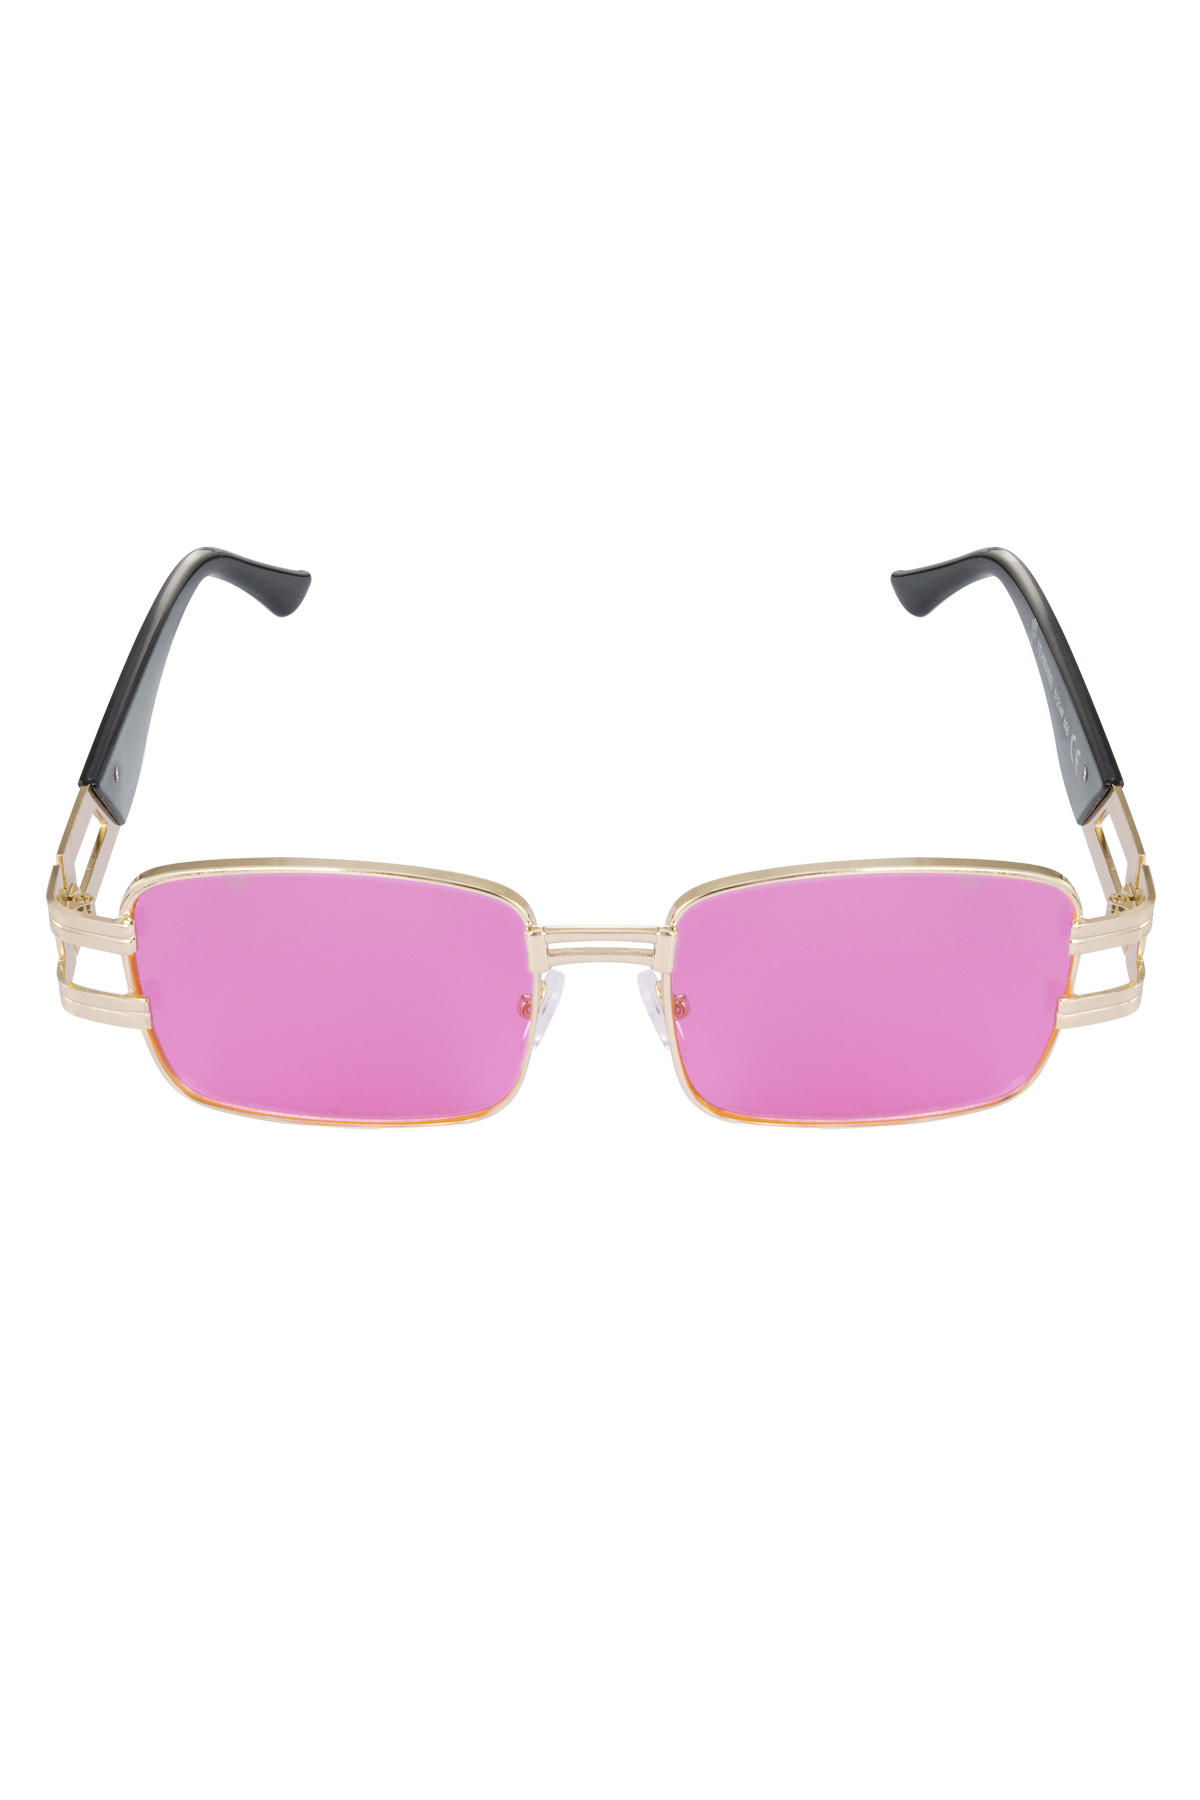 Sunglasses simple metal essential - fuchsia Picture4